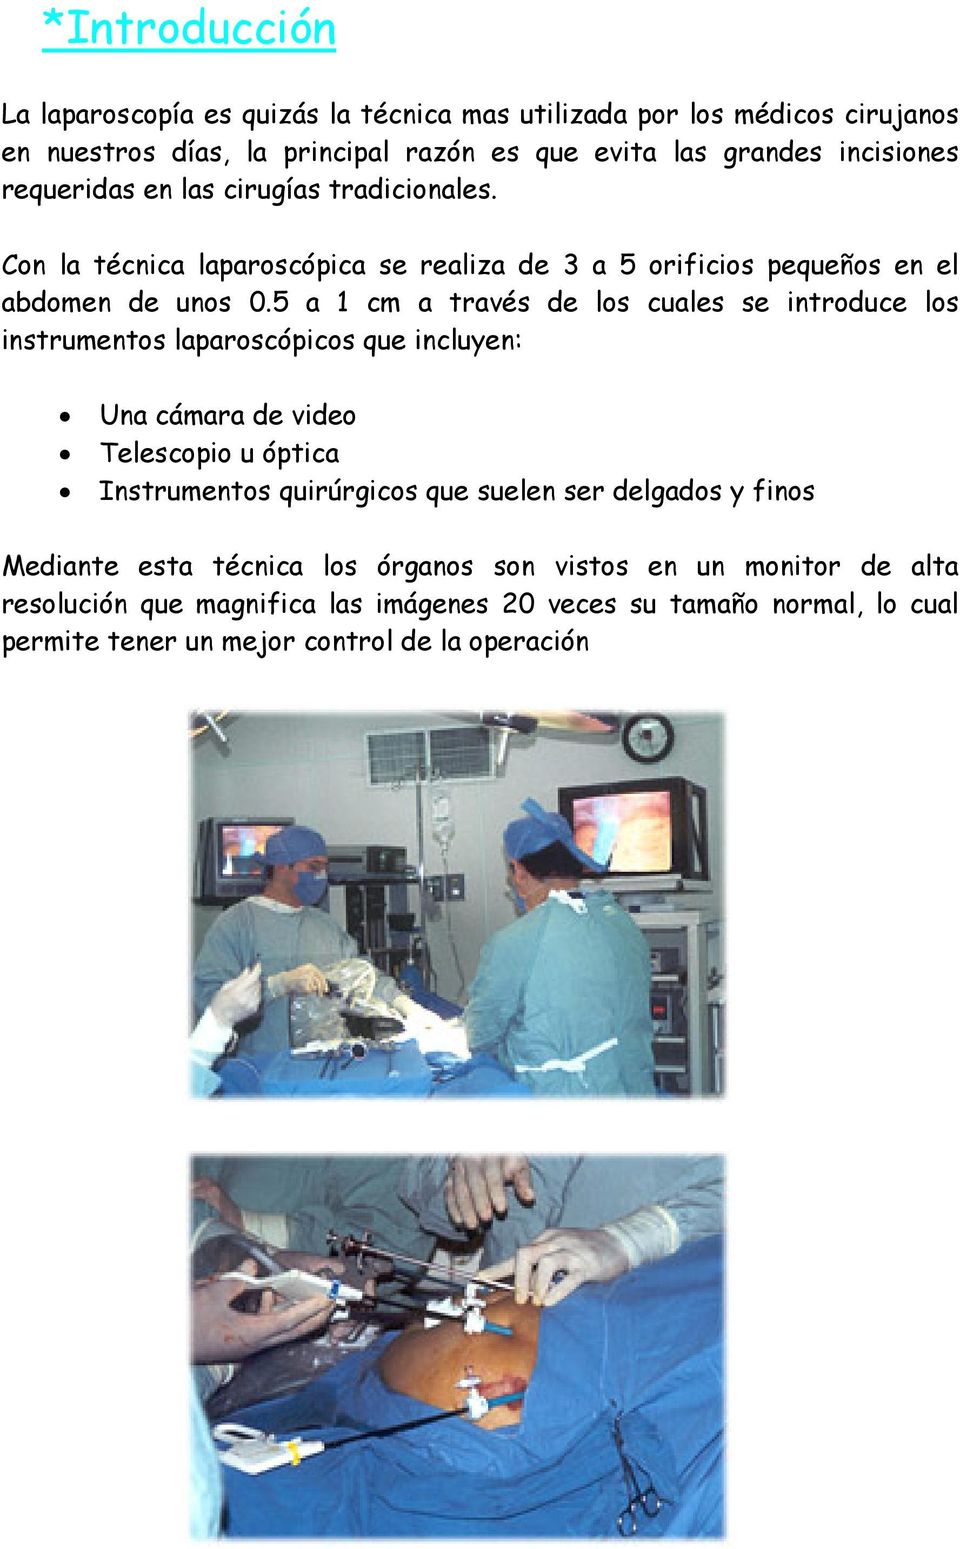 5 a 1 cm a través de los cuales se introduce los instrumentos laparoscópicos que incluyen: Una cámara de video Telescopio u óptica Instrumentos quirúrgicos que suelen